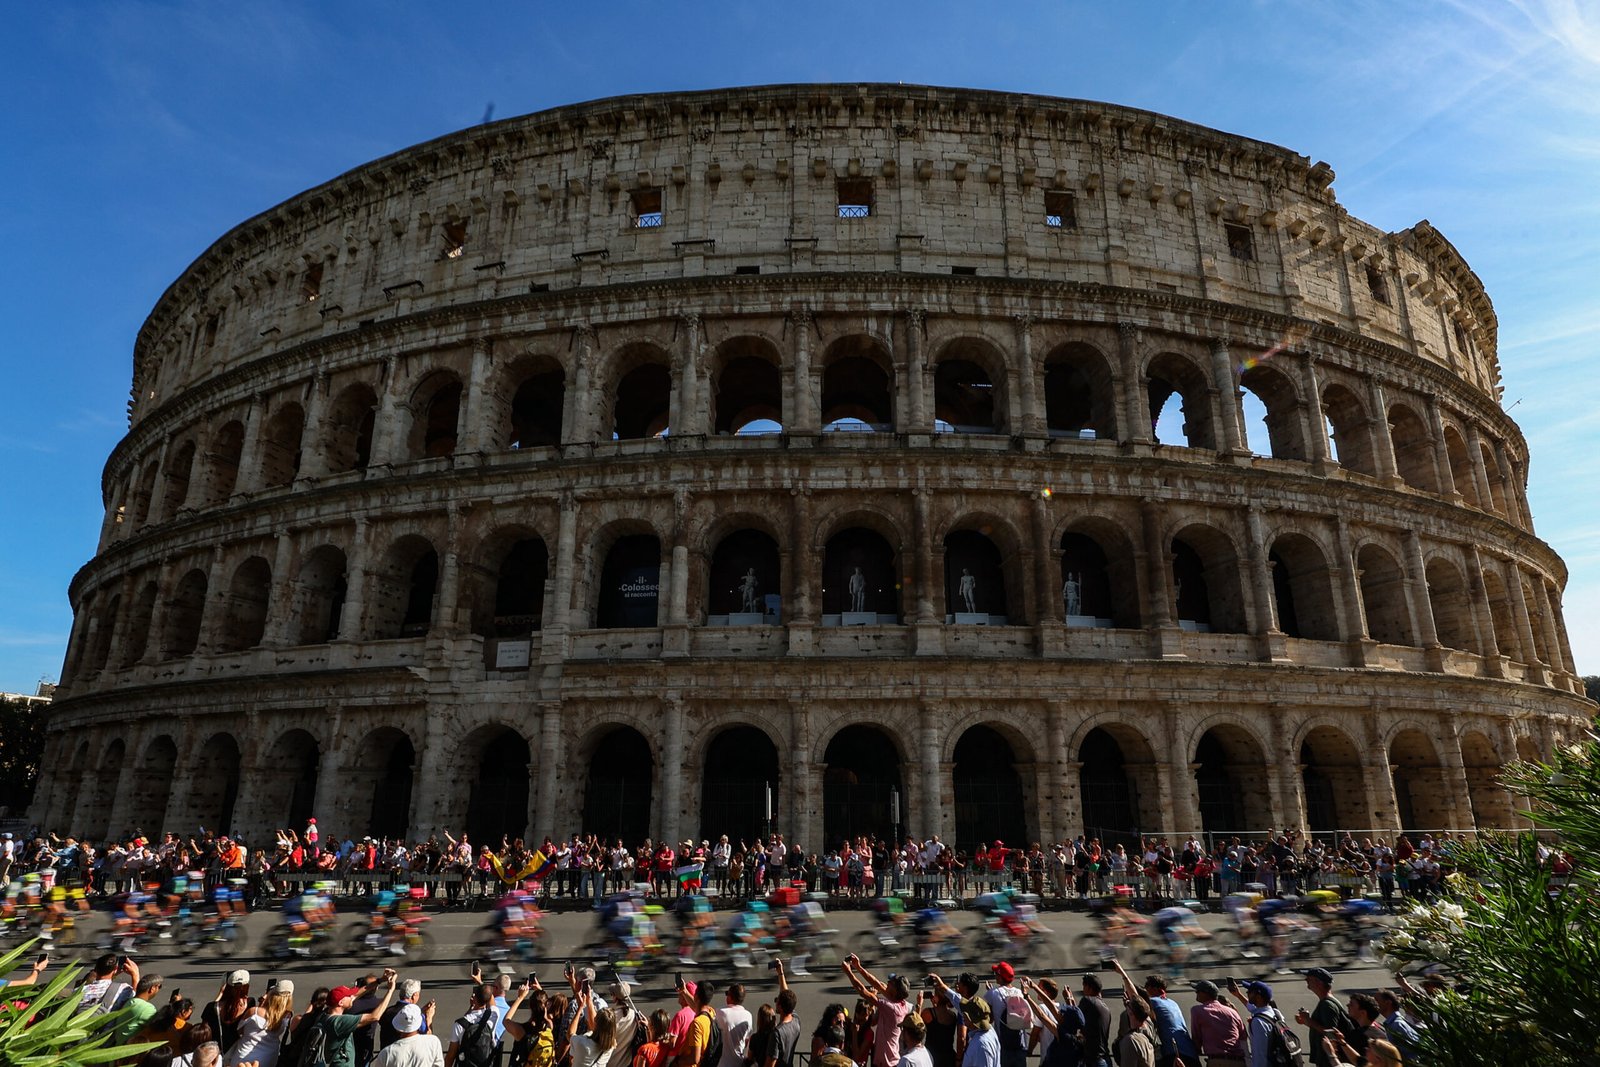 El pelotón del Giro de Italia pasando al lado del Coliseo en Roma.